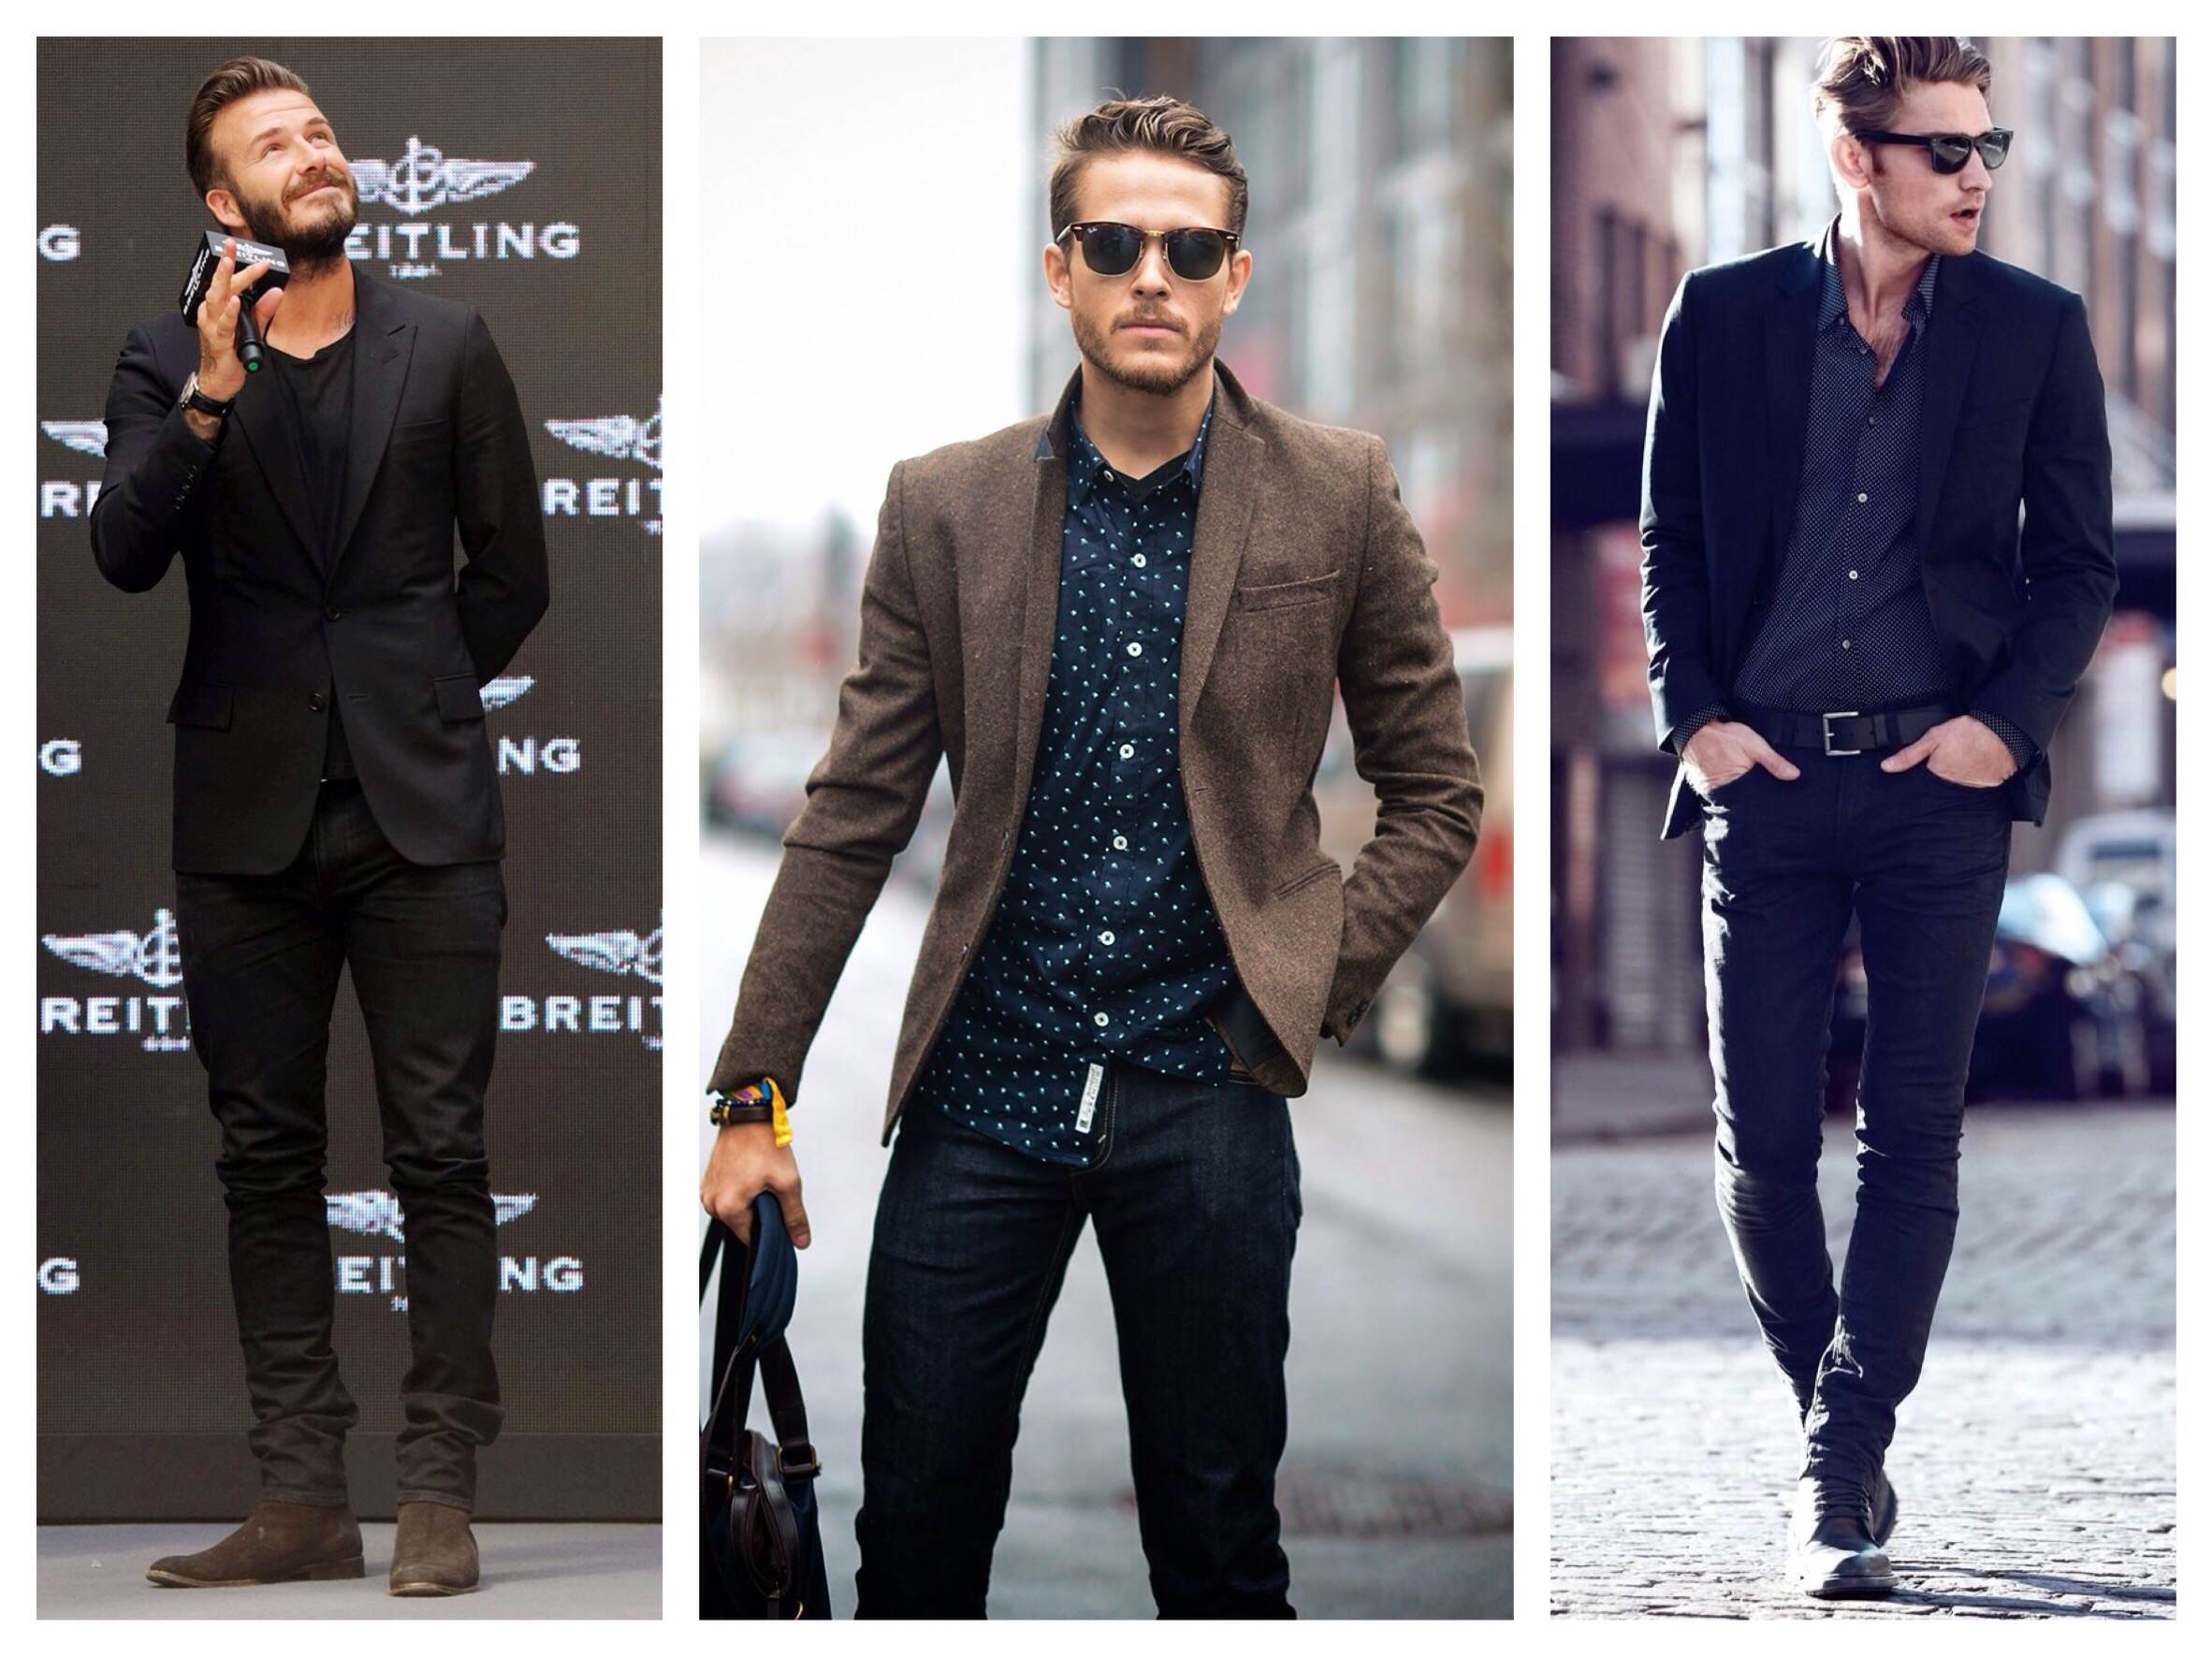 Мужские пиджаки под джинсы (110+ фото): как правильно выбрать и сочетать стильный пиджак с джинсами, обзор фасонов и производителей0